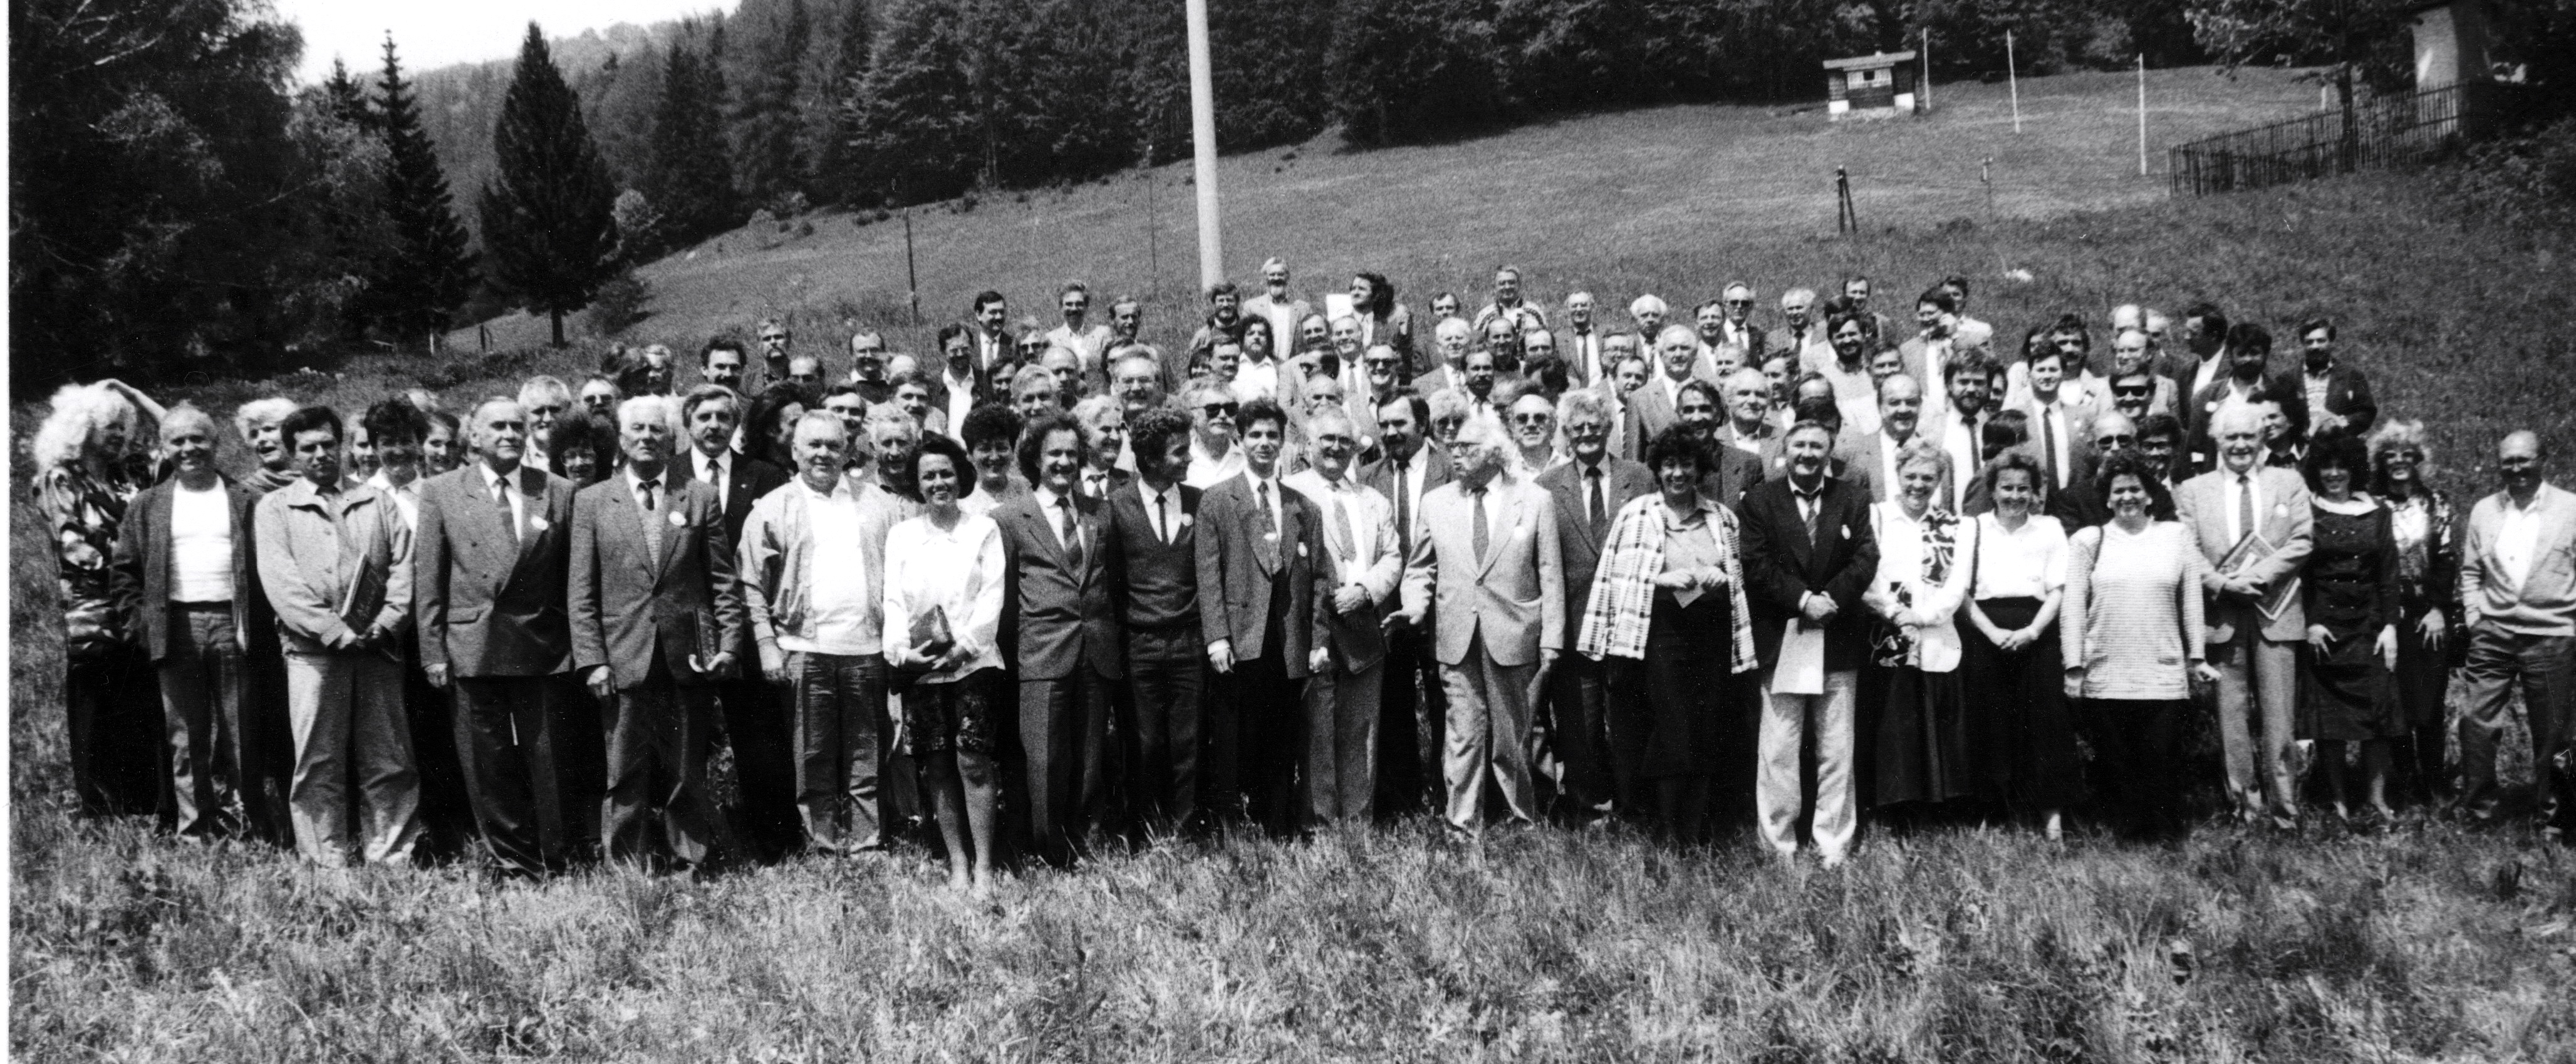 Spoločná fotografia z 30. mája 1992 - prelomové stretnutie slovenskej inteligencie na Donovaloch. (Foto: archív)